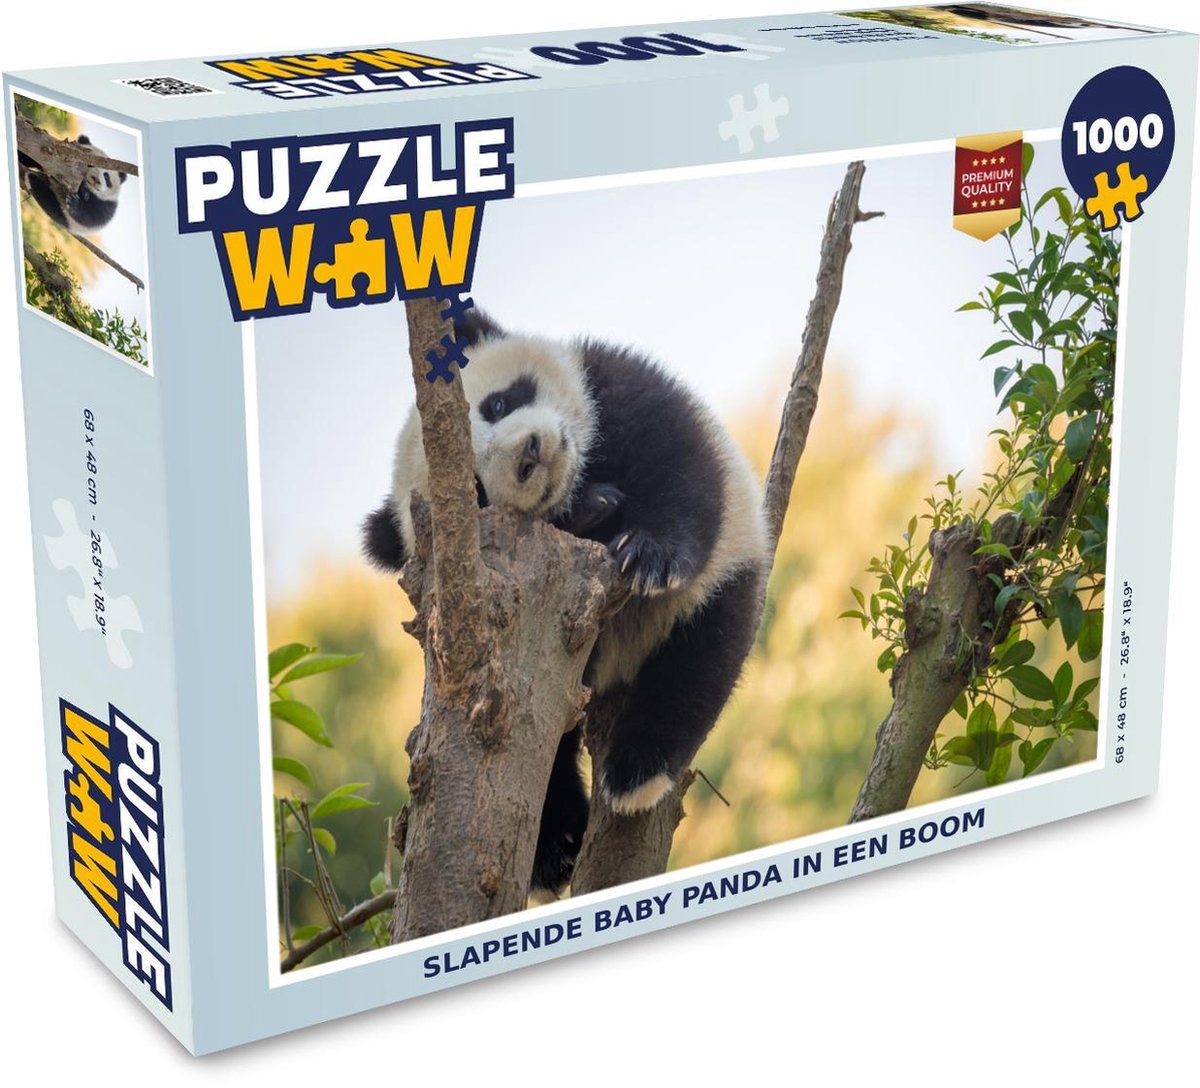 Afbeelding van product Puzzel 1000 stukjes volwassenen Slapende panda's 1000 stukjes - Slapende baby panda in een boom puzzel 1000 stukjes - PuzzleWow heeft +100000 puzzels